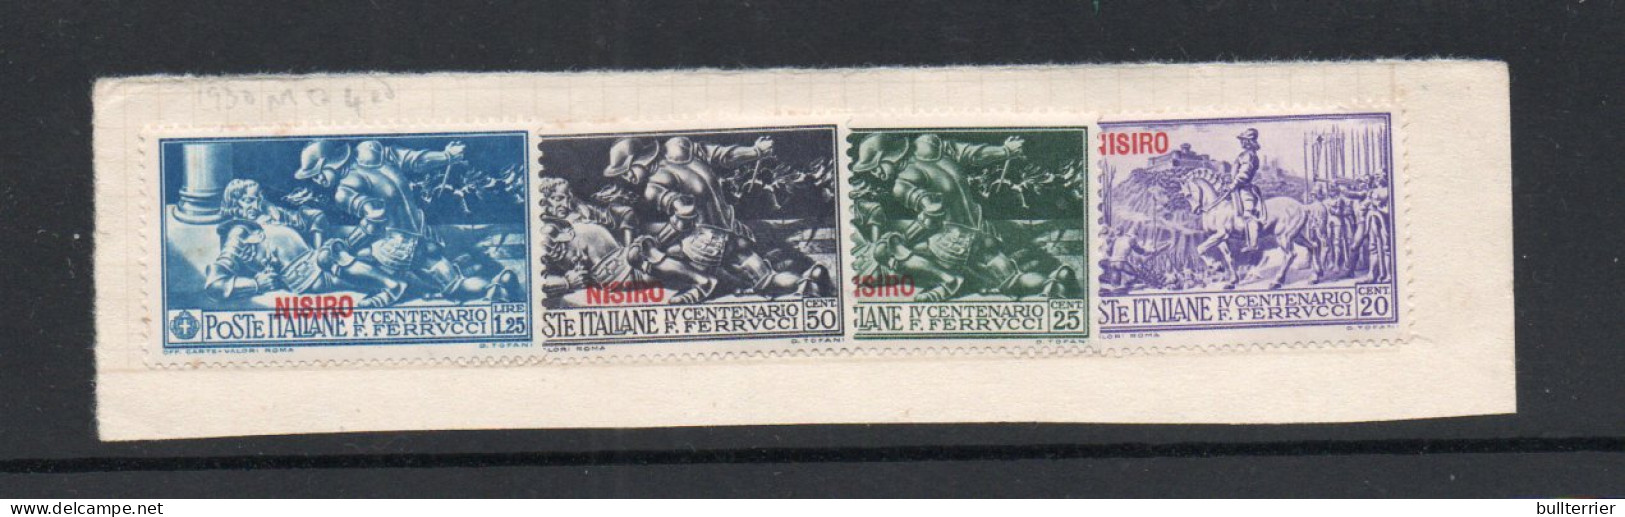 AEGEAN ISLANDS  / NISIRO   -1930 FERRUCCI 20C. 25C  50C AND 1L25 MINT HINGED  SG CAT £23 - Ägäis (Nisiro)